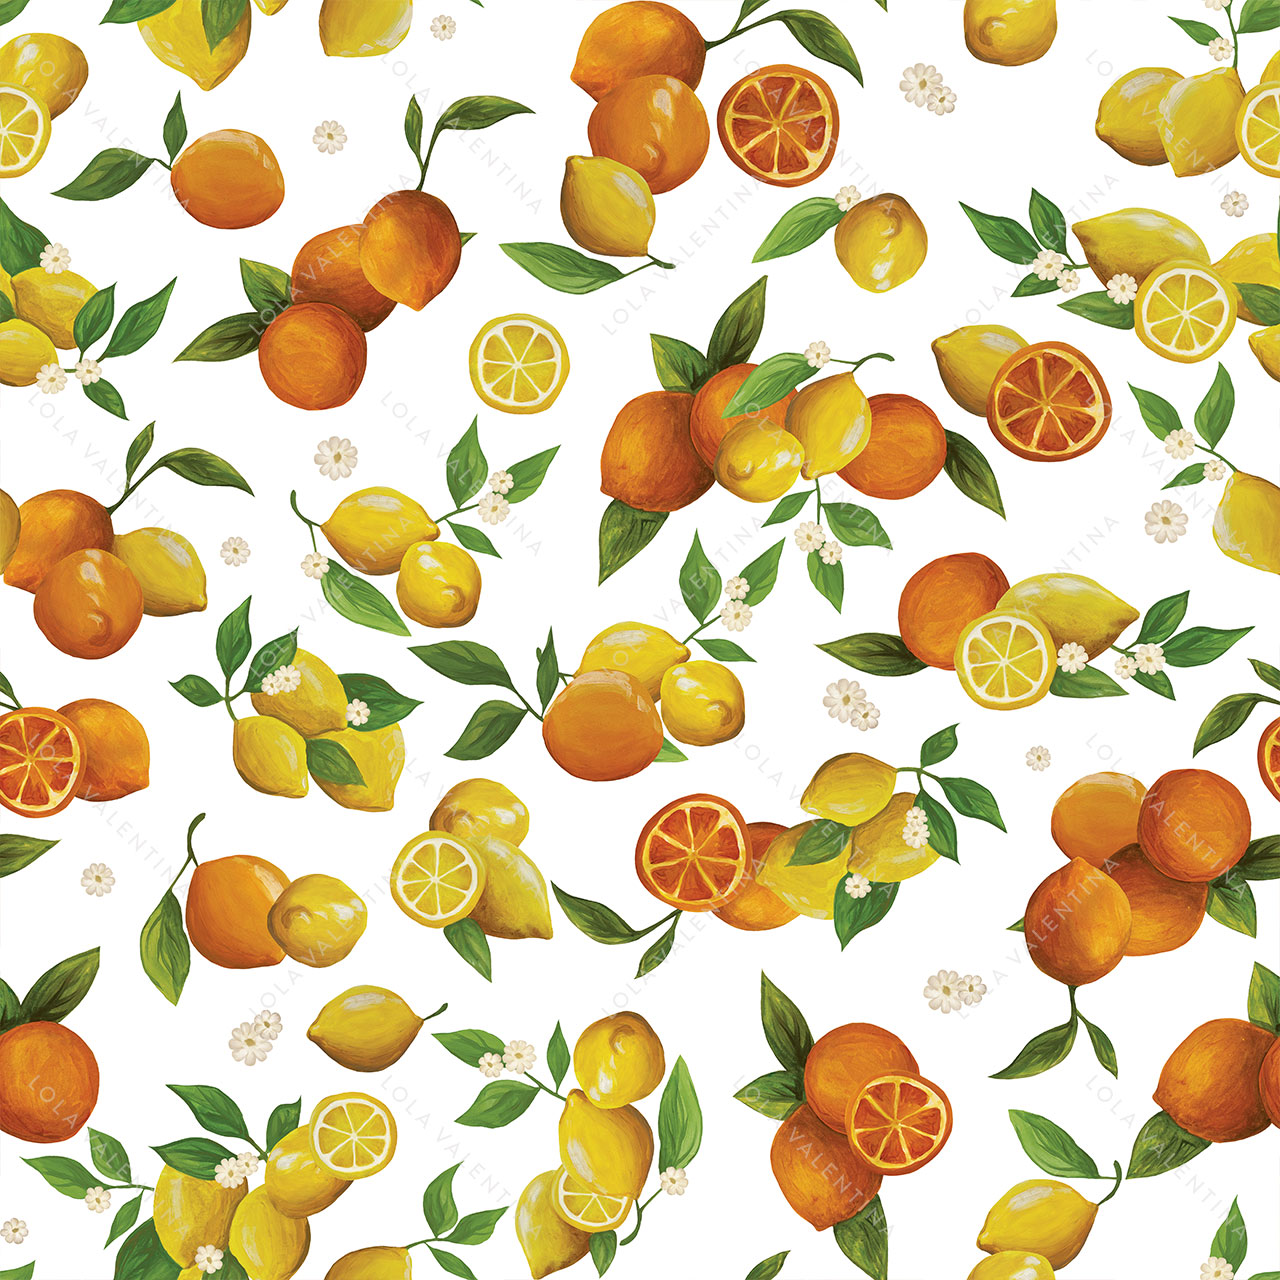 Oranges-Citrus-Fruits-Lemons-Pattern